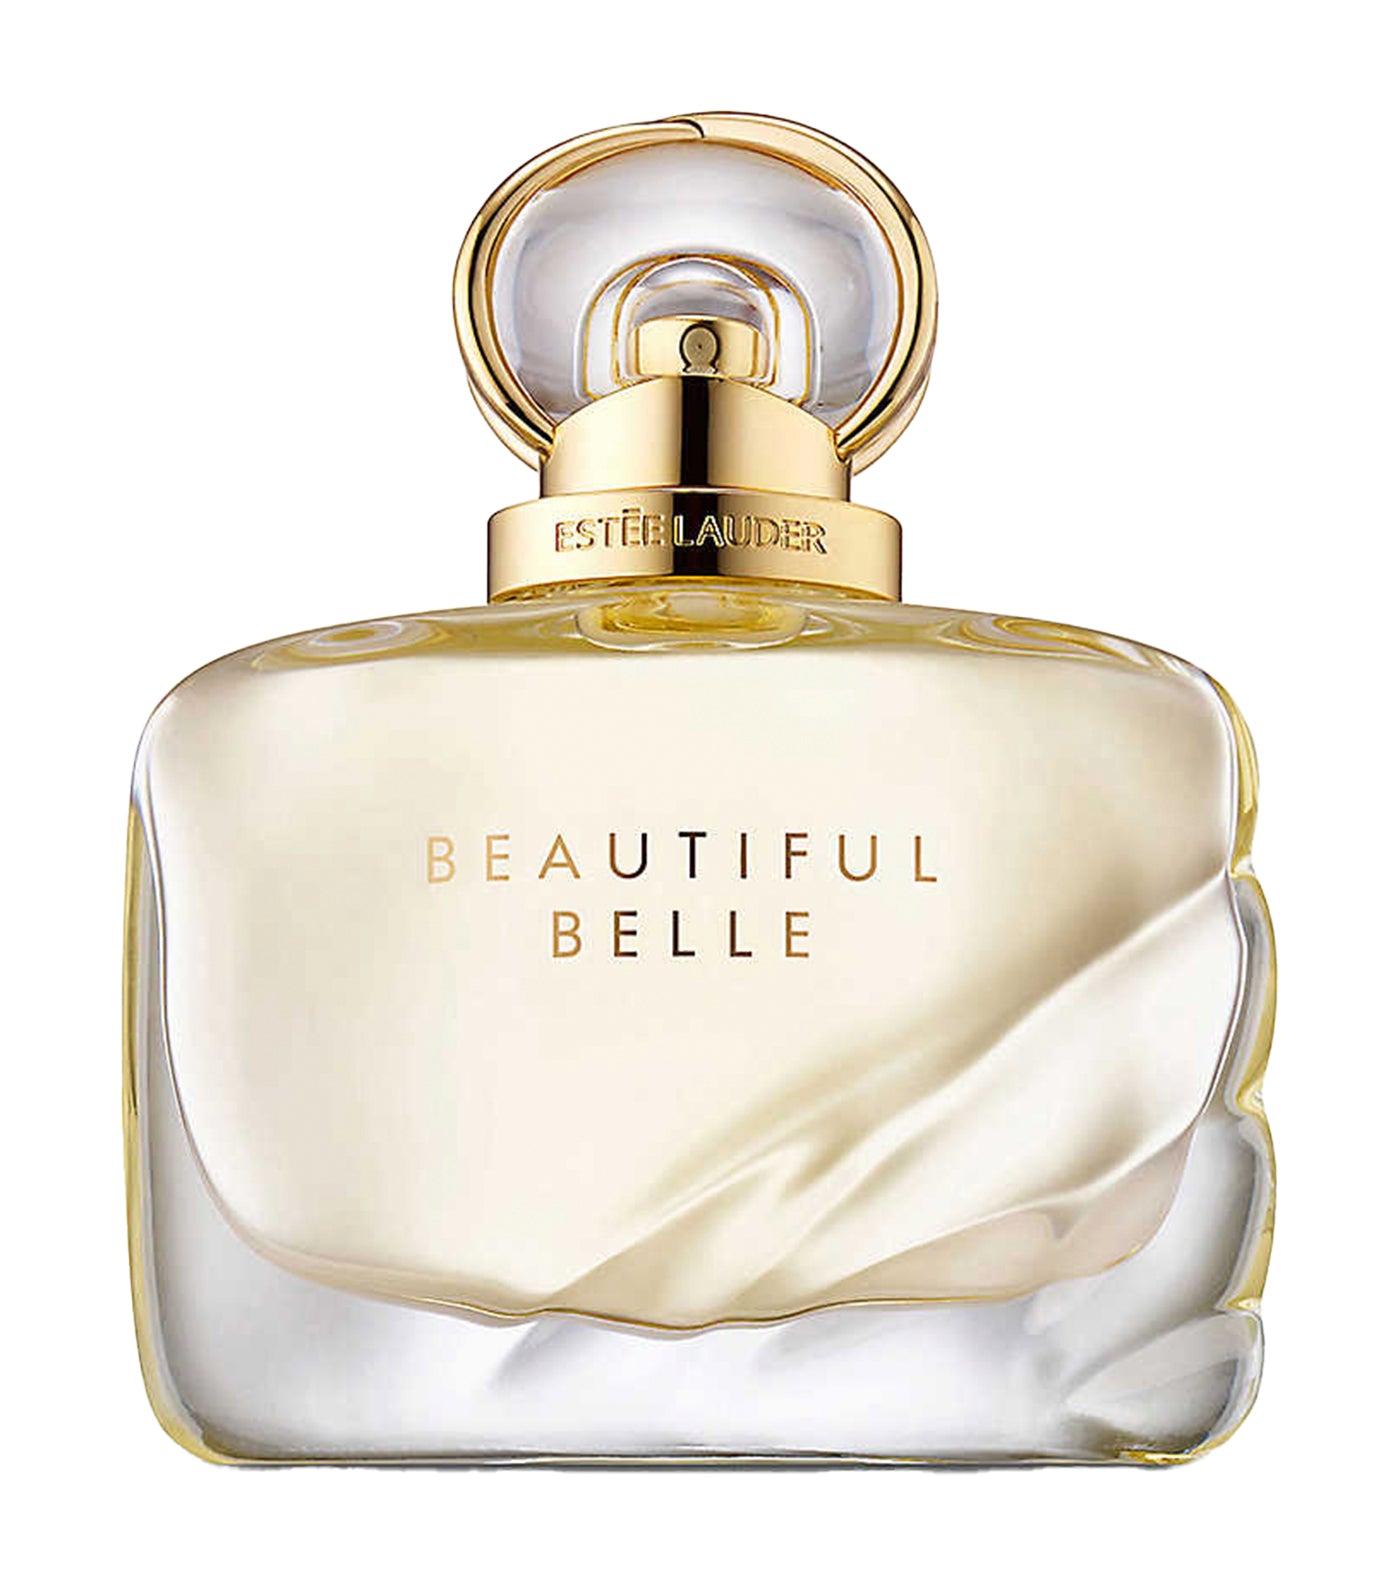 Beautiful Belle Eau de Parfum